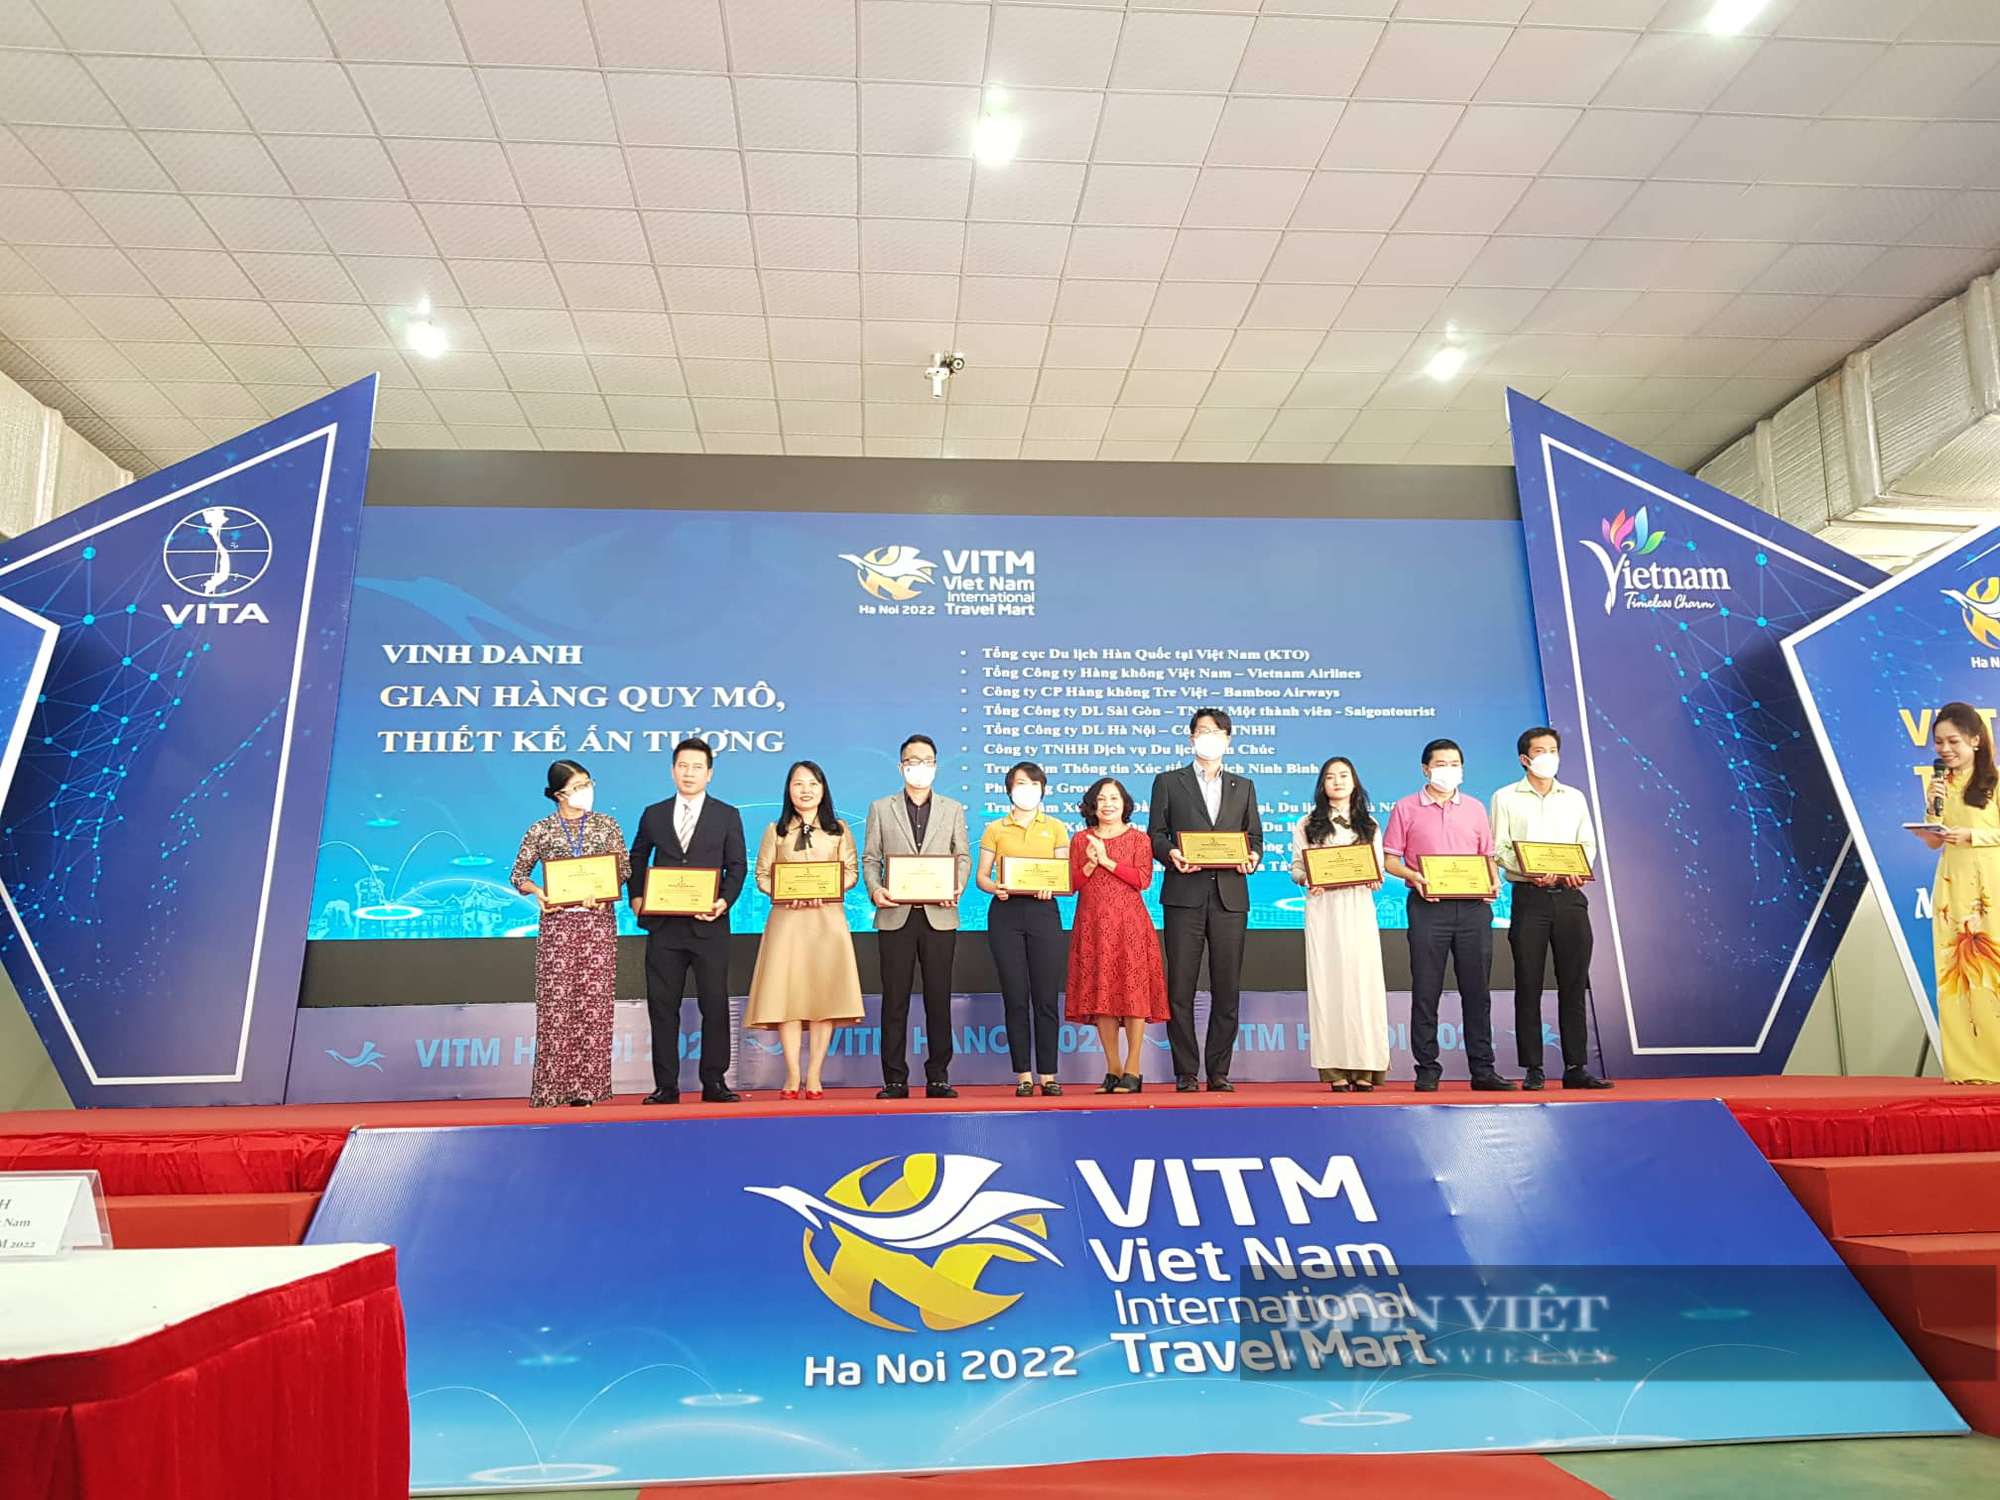 Hội chợ Du lịch quốc tế VITM thu hút hơn 2000 doanh nghiệp và khoảng 40.000 lượt khách tham  - Ảnh 2.